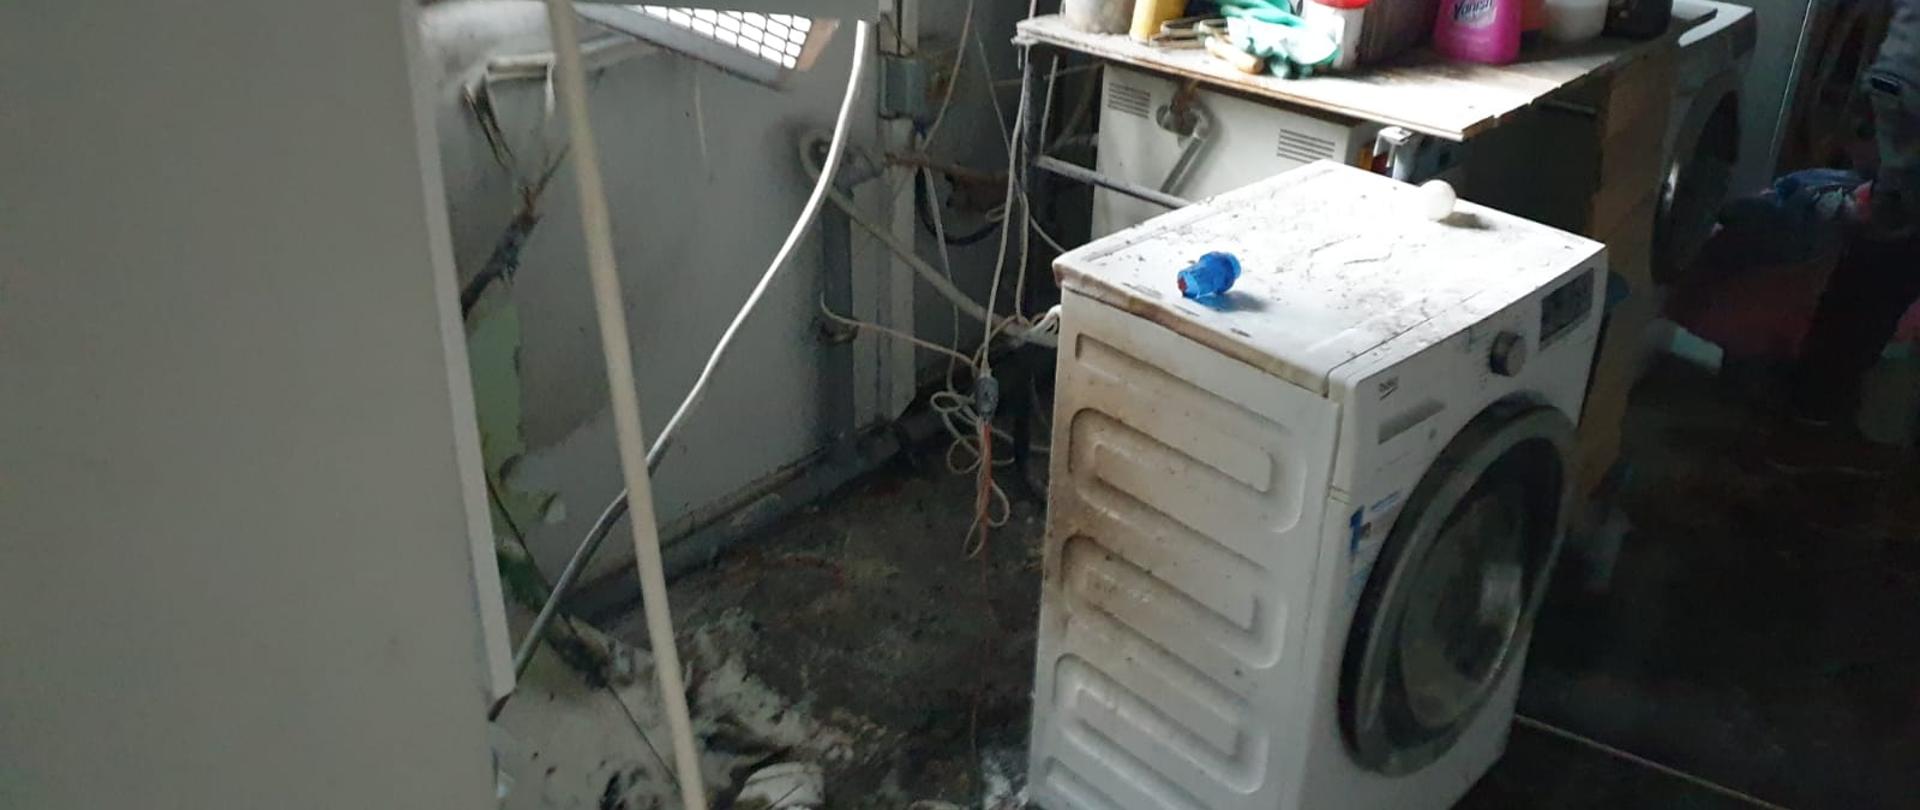 Na zdjęciu widać miejsce pożaru w pralni. Uszkodzone, stopione instalacje elektryczne oraz pralka. Okopcone ściany. 